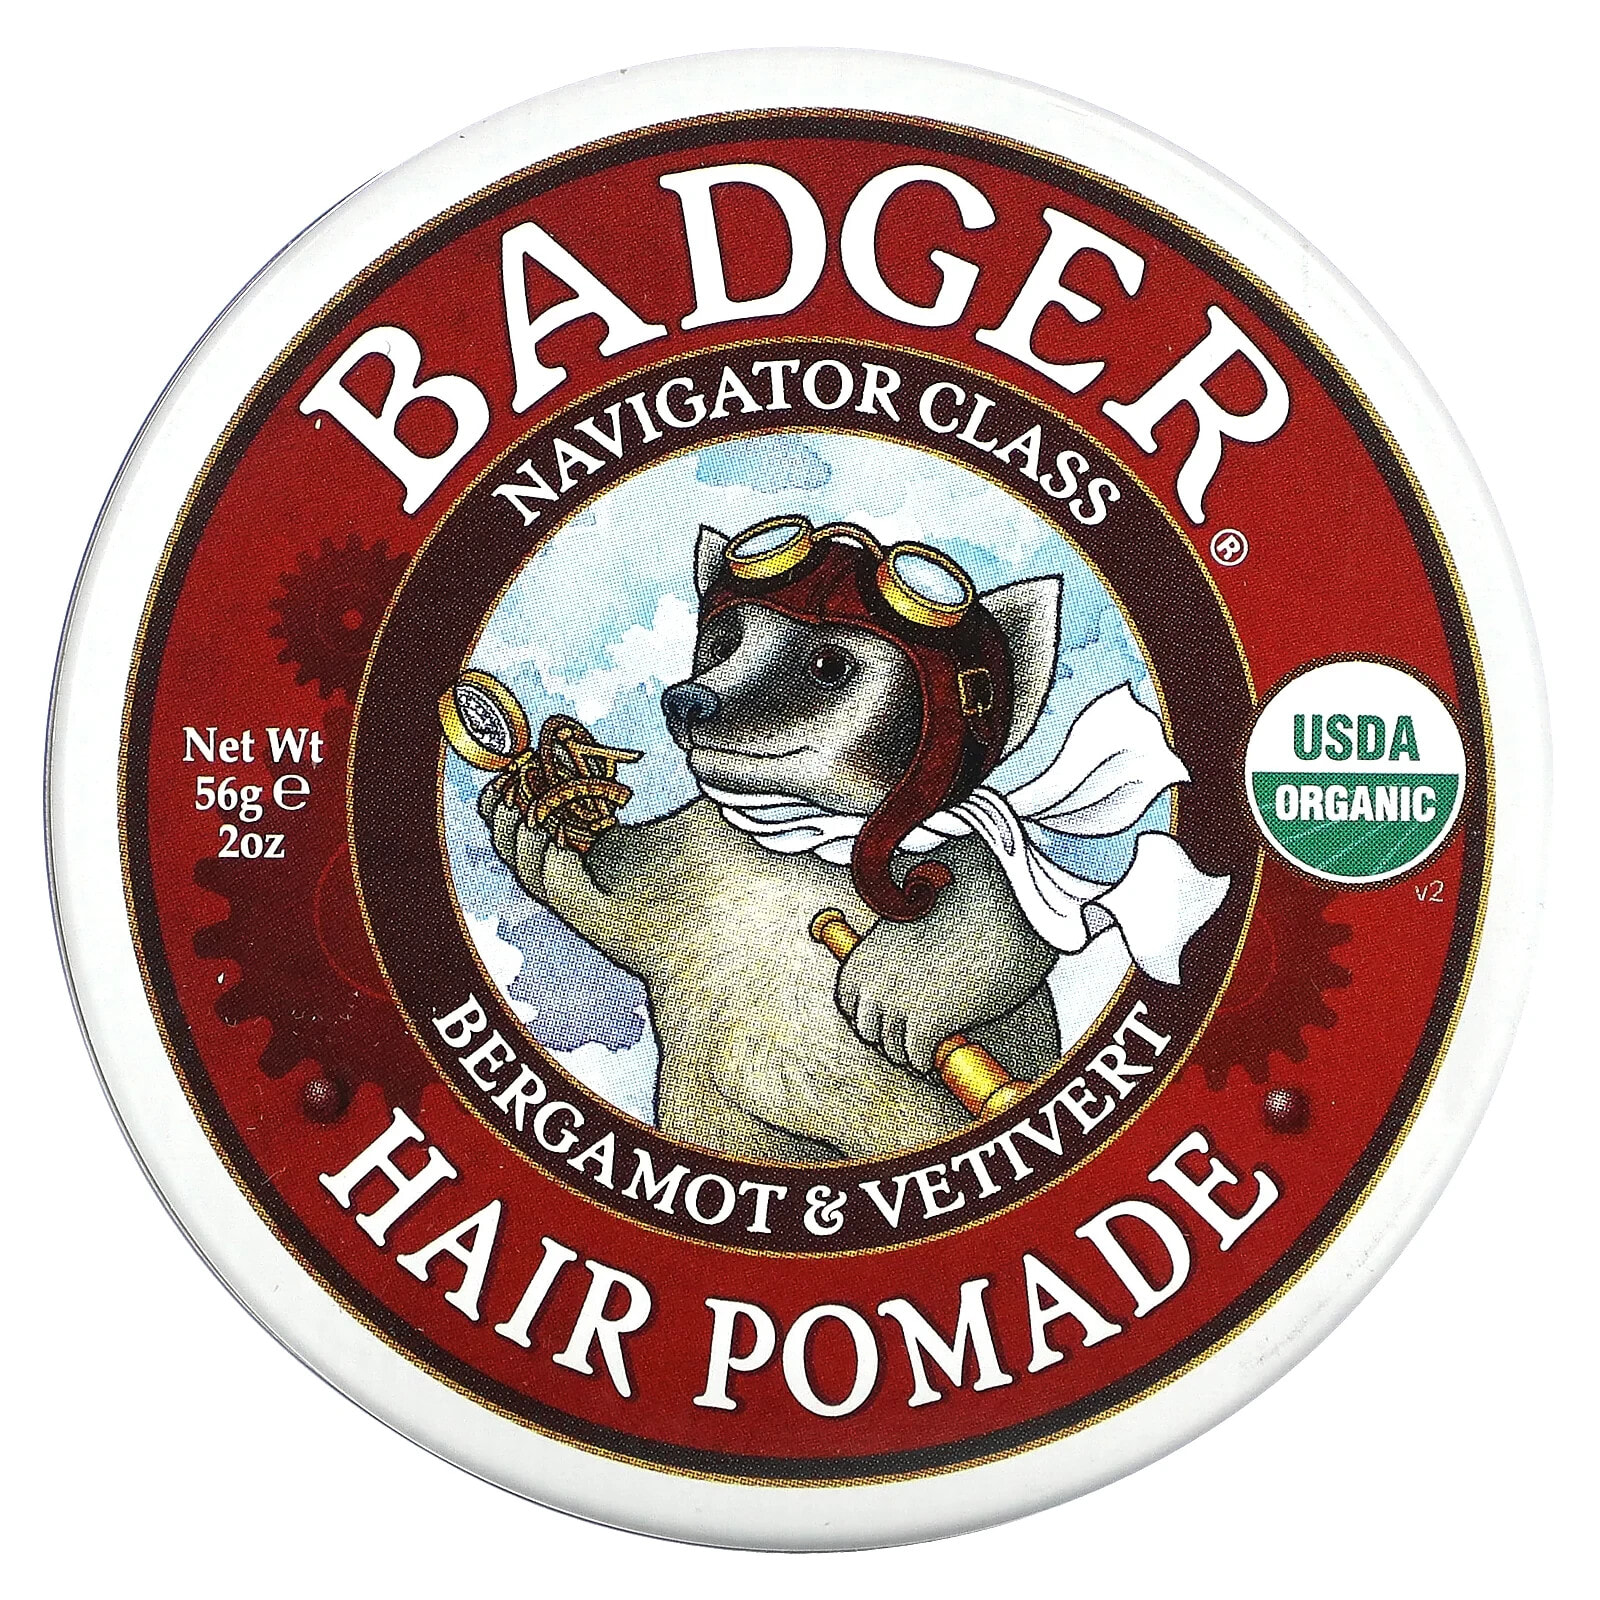 Бадгер компания, Organic, помада для волос, класс Navigator, 56 г (2 унции)